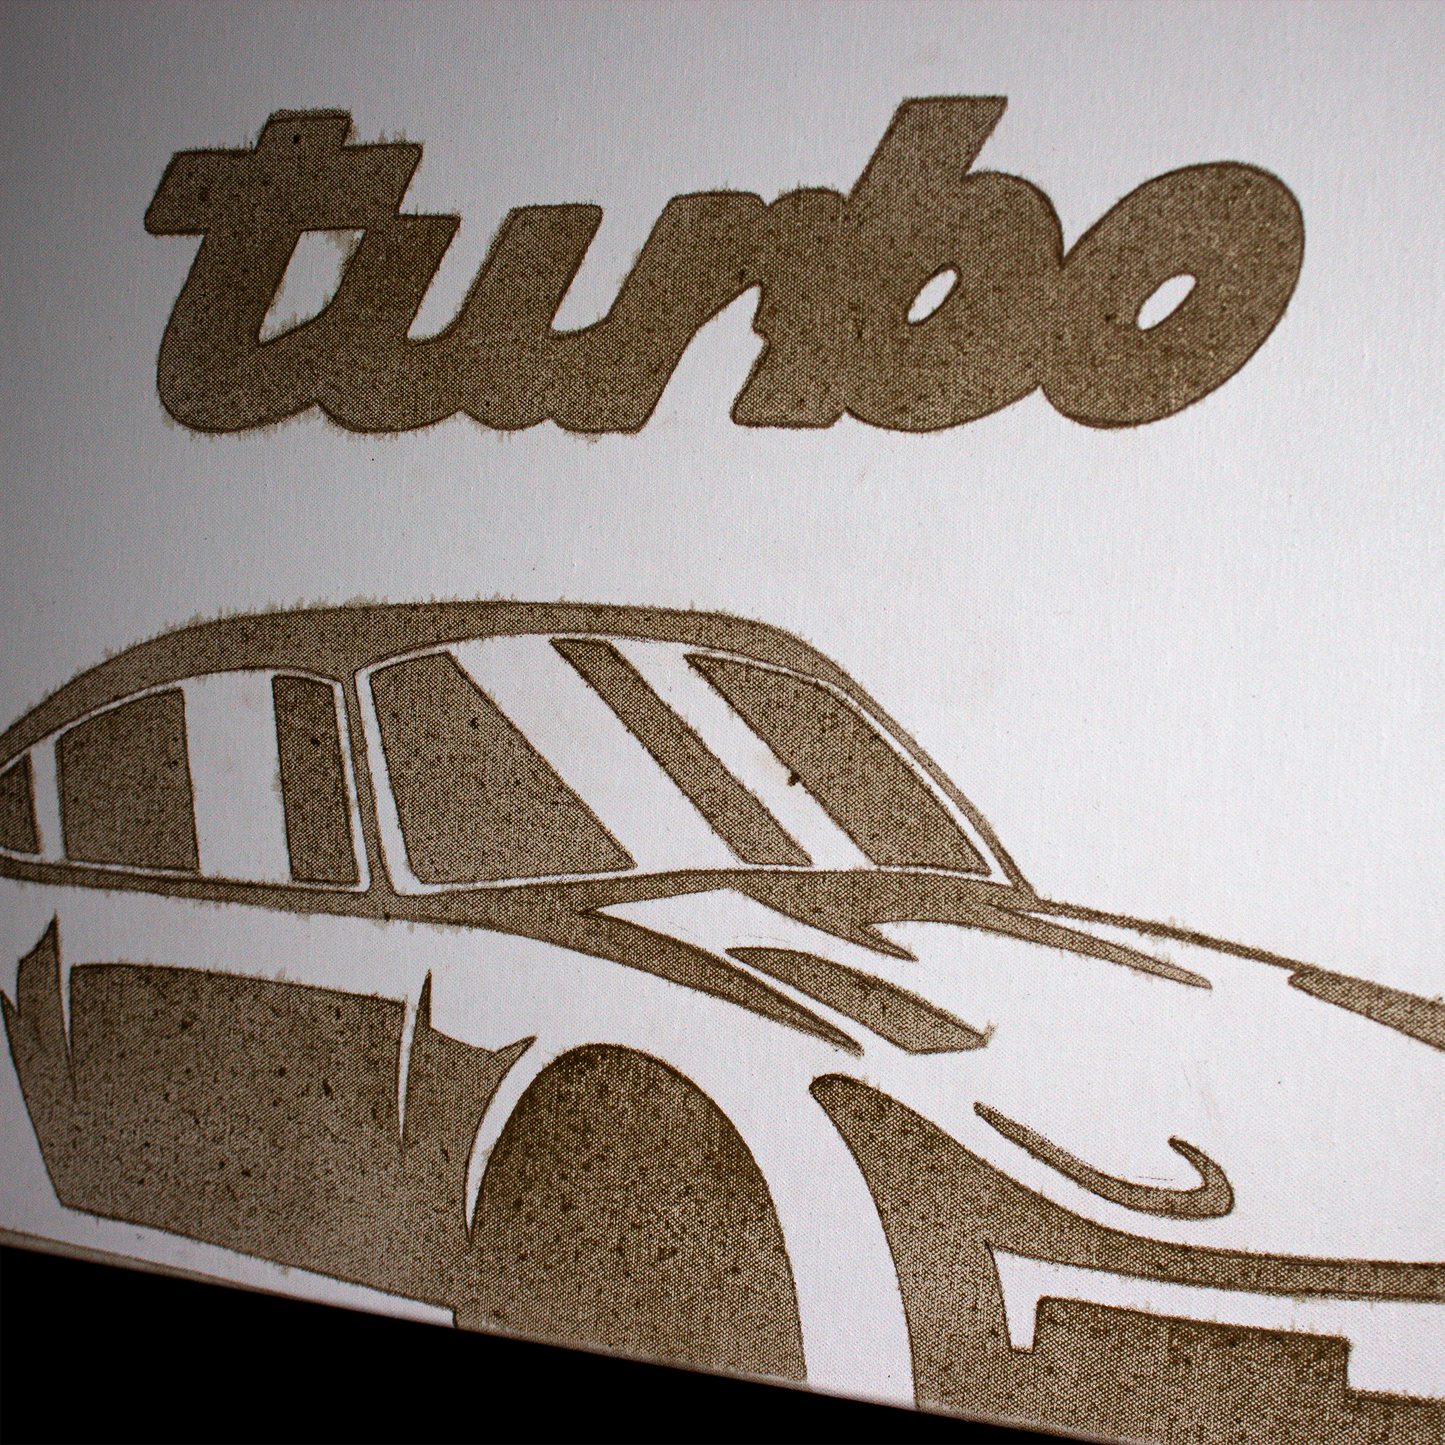 Engine Oil Painting - "Turbo"